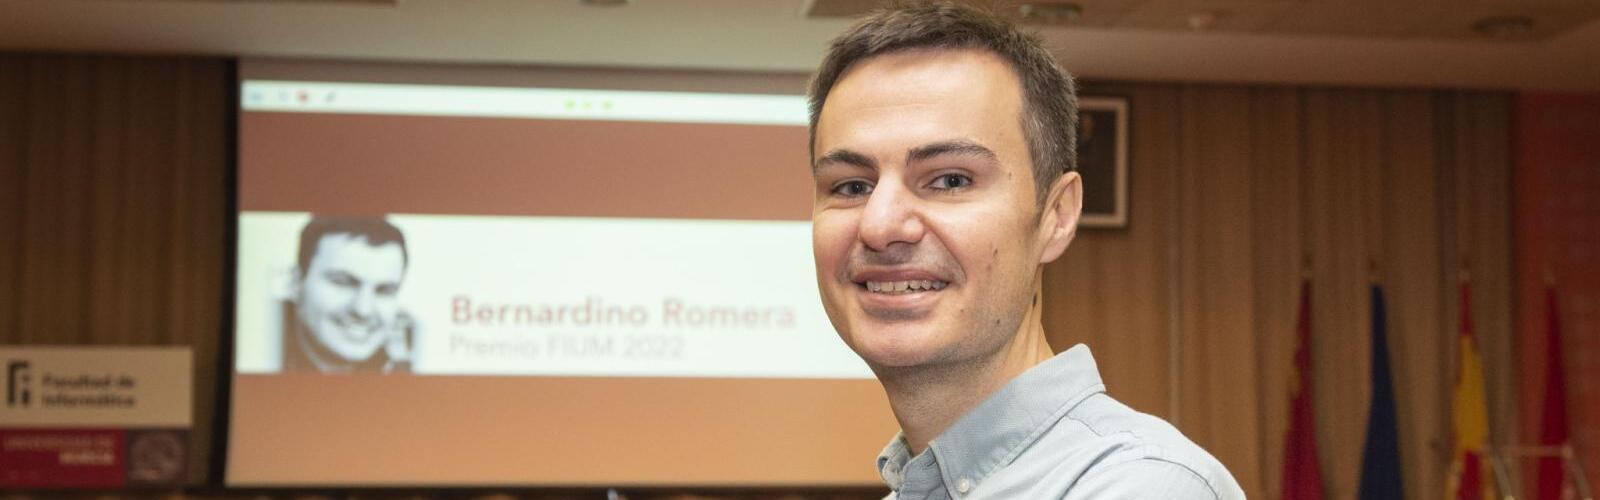 La Facultad de Informática de la UMU entrega su premio anual FIUM a Bernardino Romera, especialista en inteligencia artificial